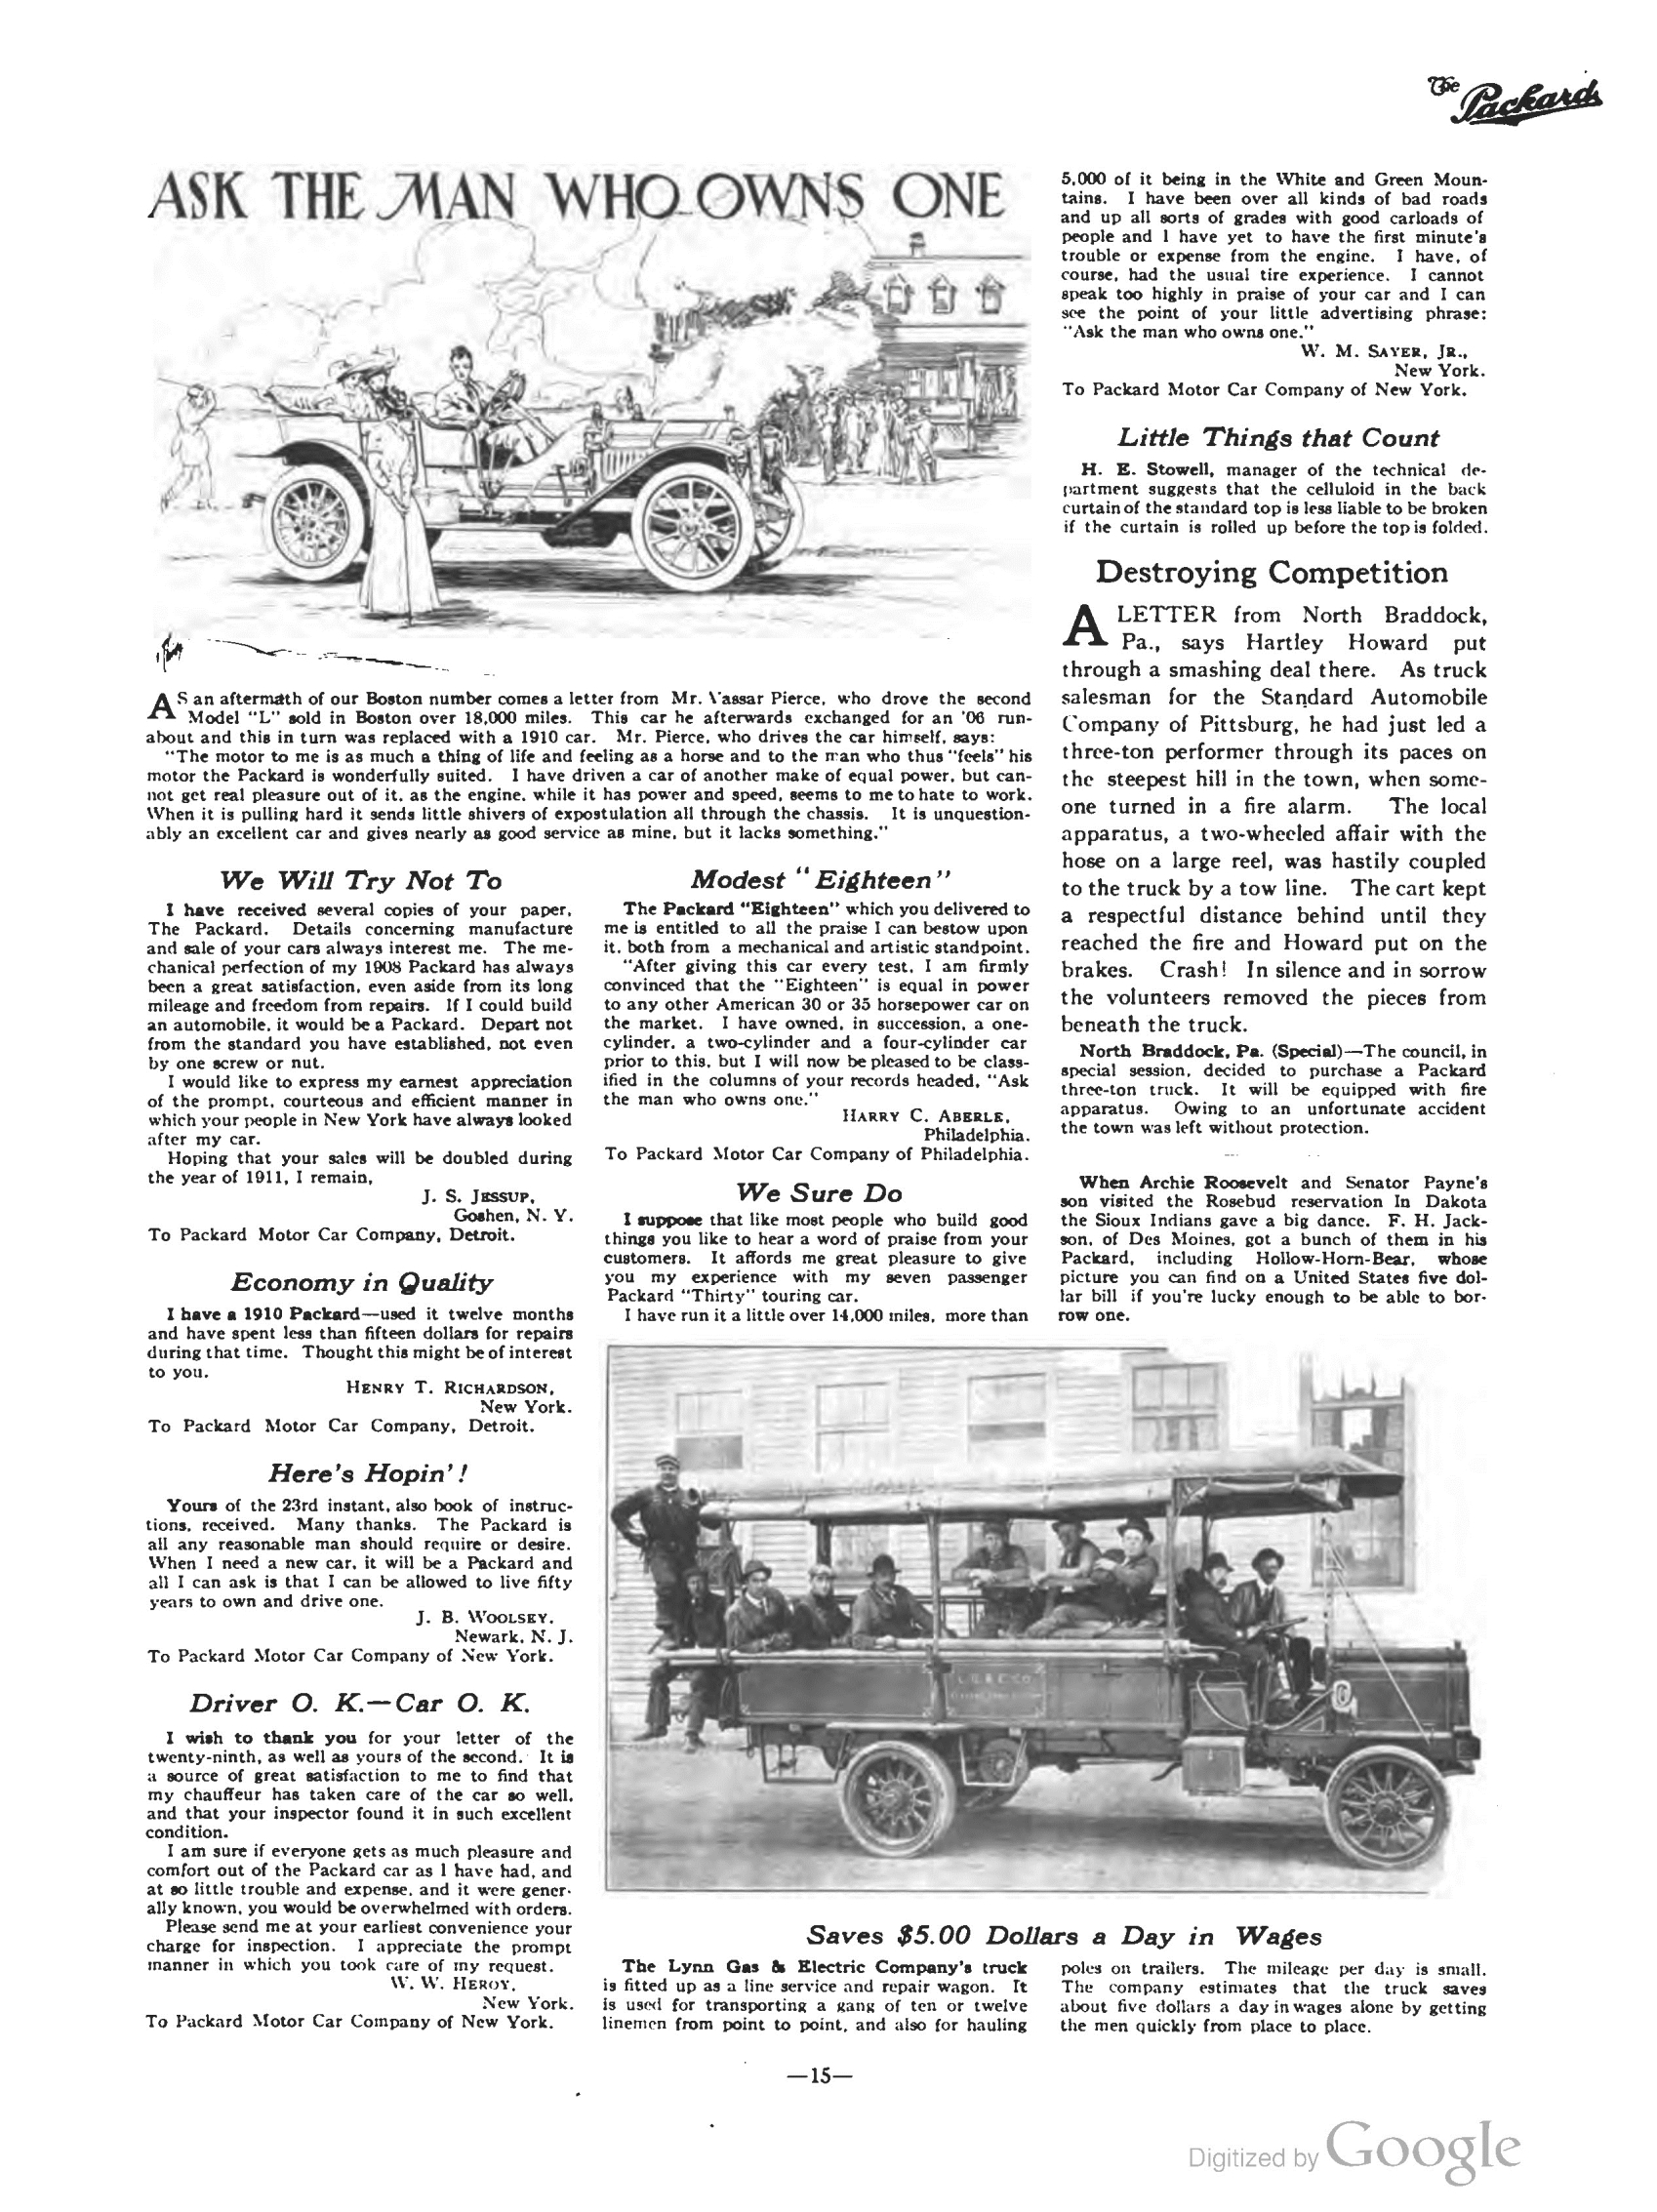 1911_The_Packard_Newsletter-037